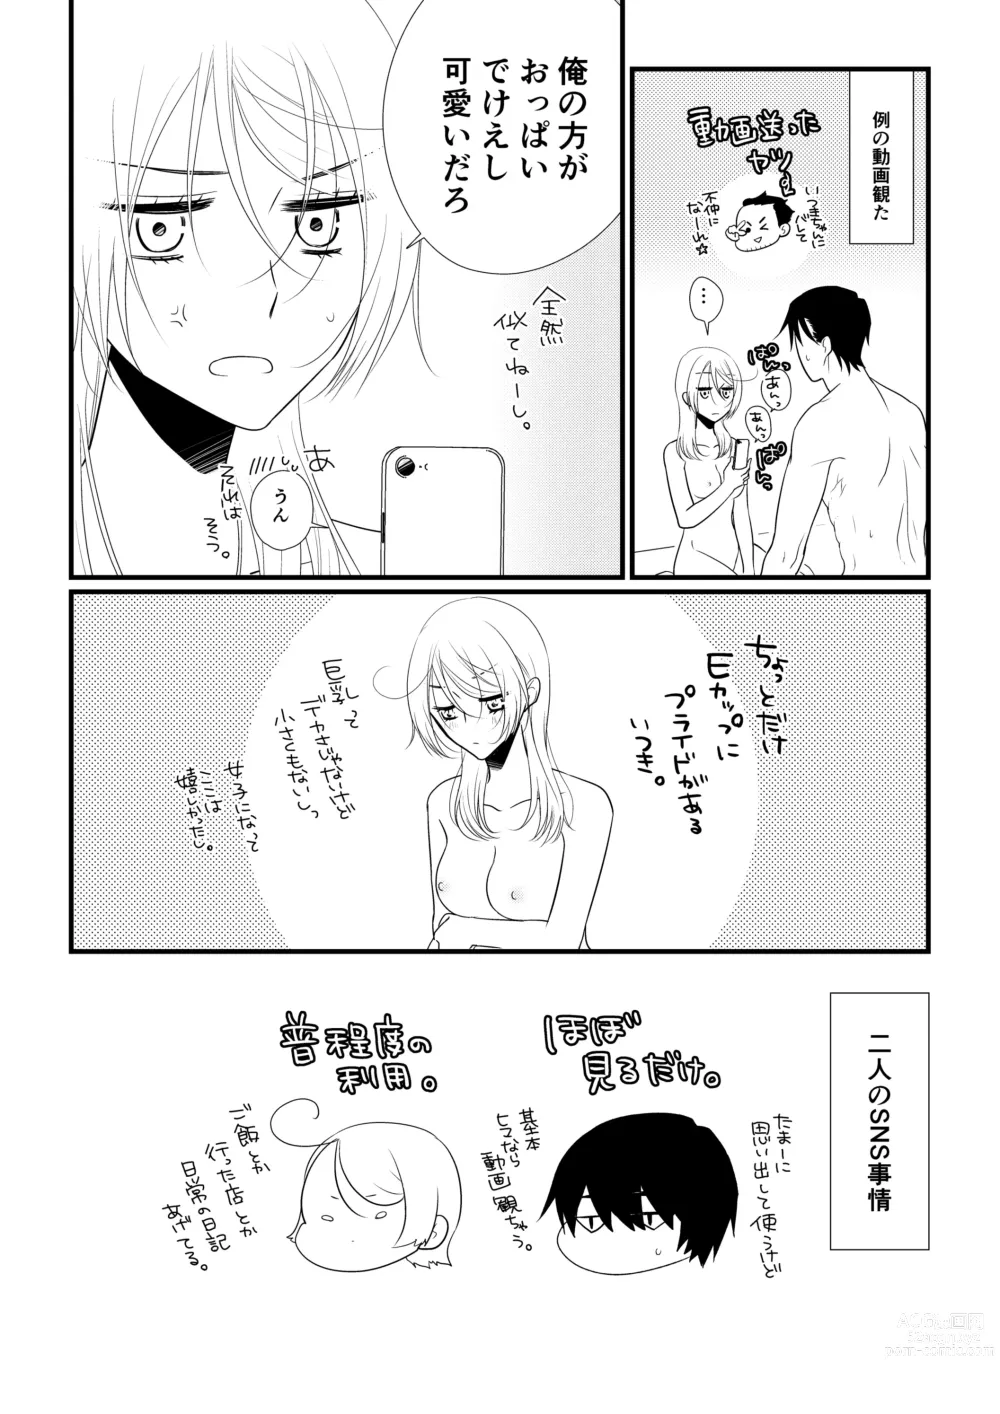 Page 109 of doujinshi Itsuki to Yuusei 2